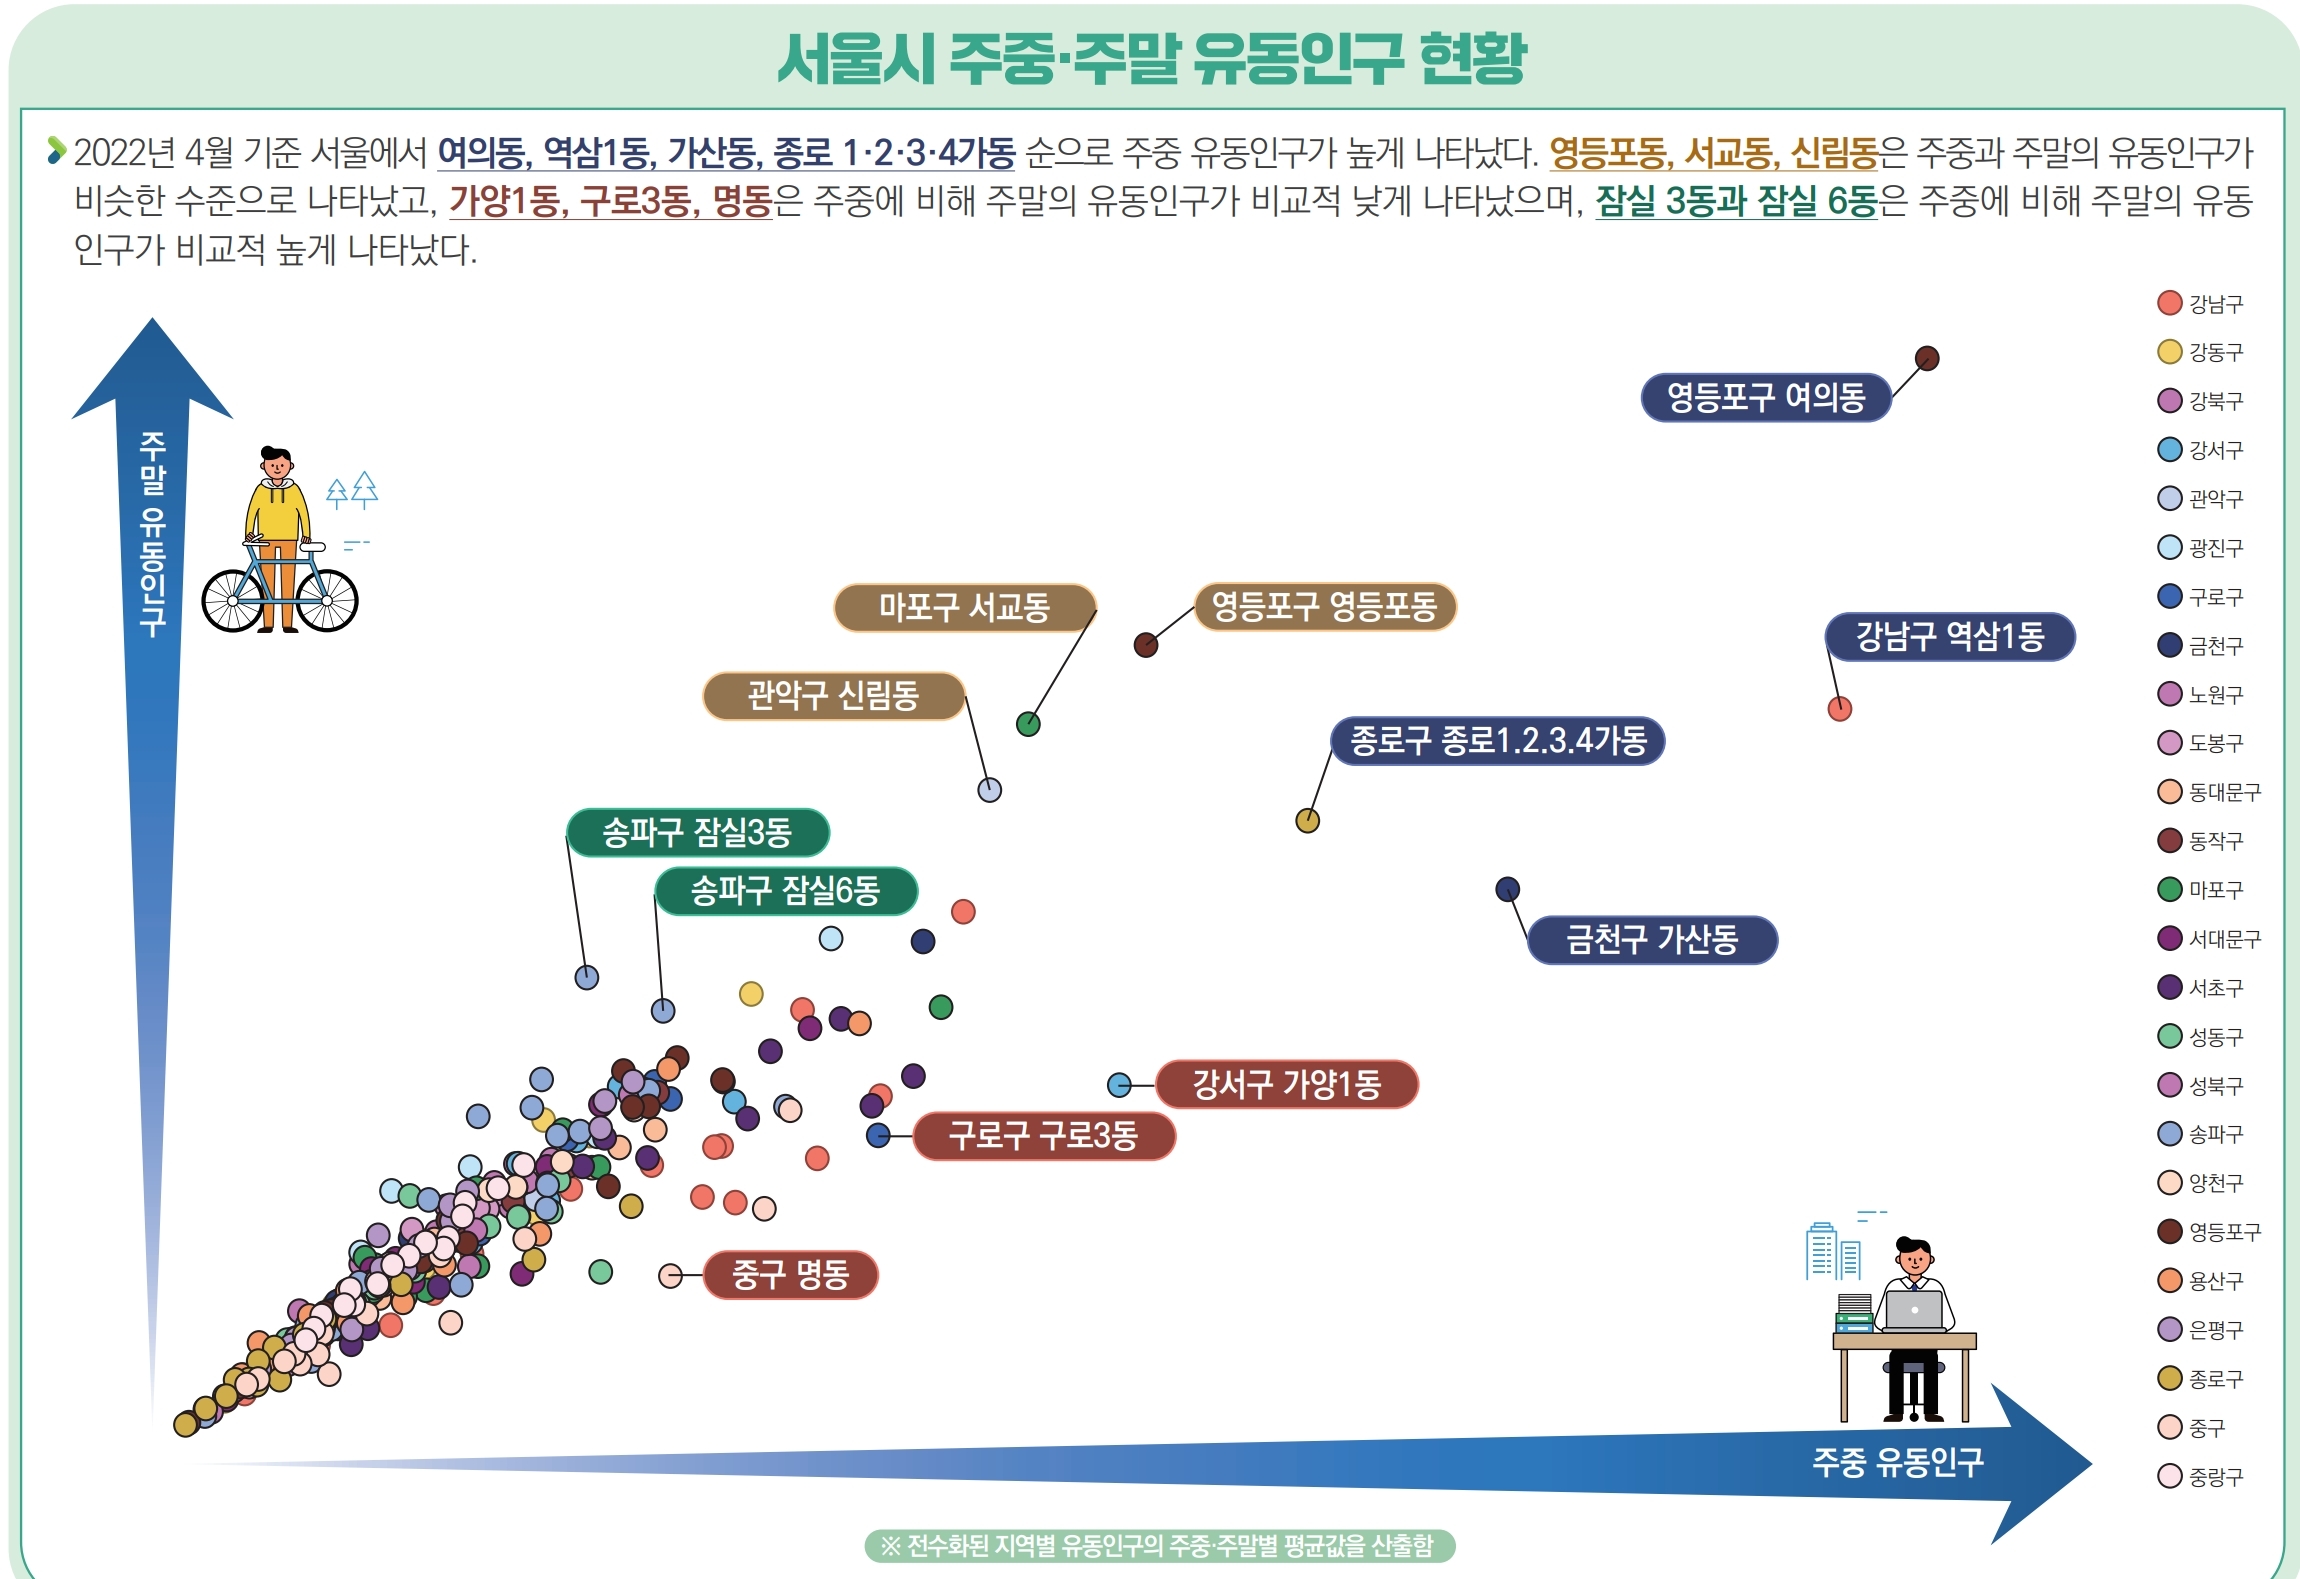 2022년 4월 기준 서울에서 여의동, 역삼1동, 가산동, 종로 1·2·3·4가동 순으로 주중 유동인구가 높게 나타났다. 영등포동, 서교동, 신림동은 주중과 주말의 유동인구가 비슷한 수준으로 나타났고, 가양1동, 구로3동, 명동은 주중에 비해 주말의 유동인구가 비교적 낮게 나타났으며, 잠실 3동과 잠실 6동은 주중에 비해 주말의 유동 인구가 비교적 높게 나타났다.